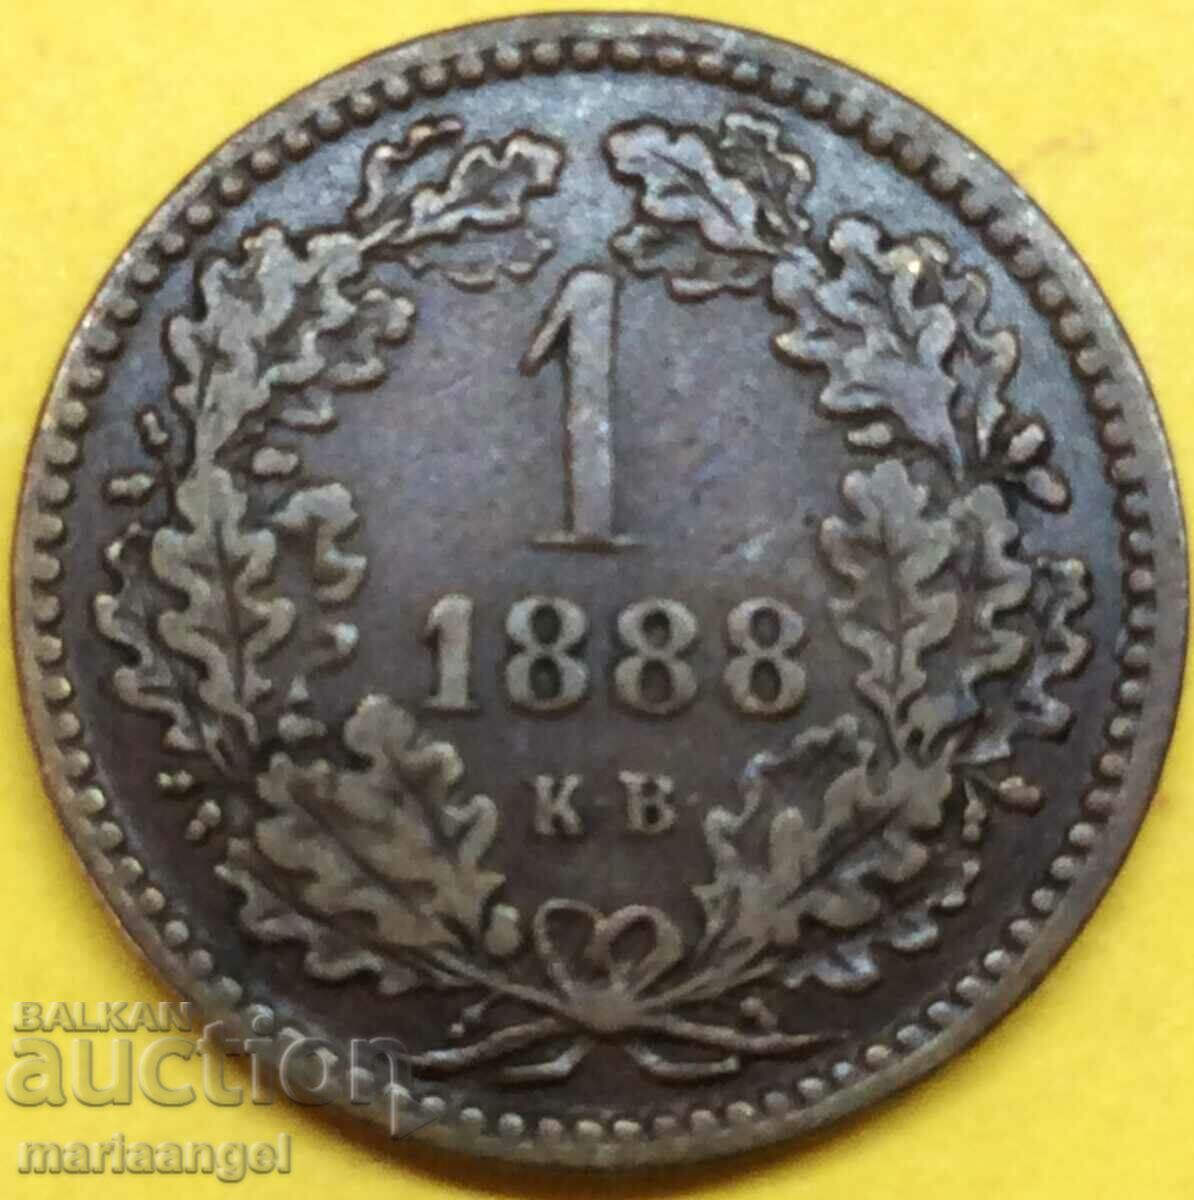 Ουγγαρία 1 Kreuzer 1888 KV - σπάνιο έτος